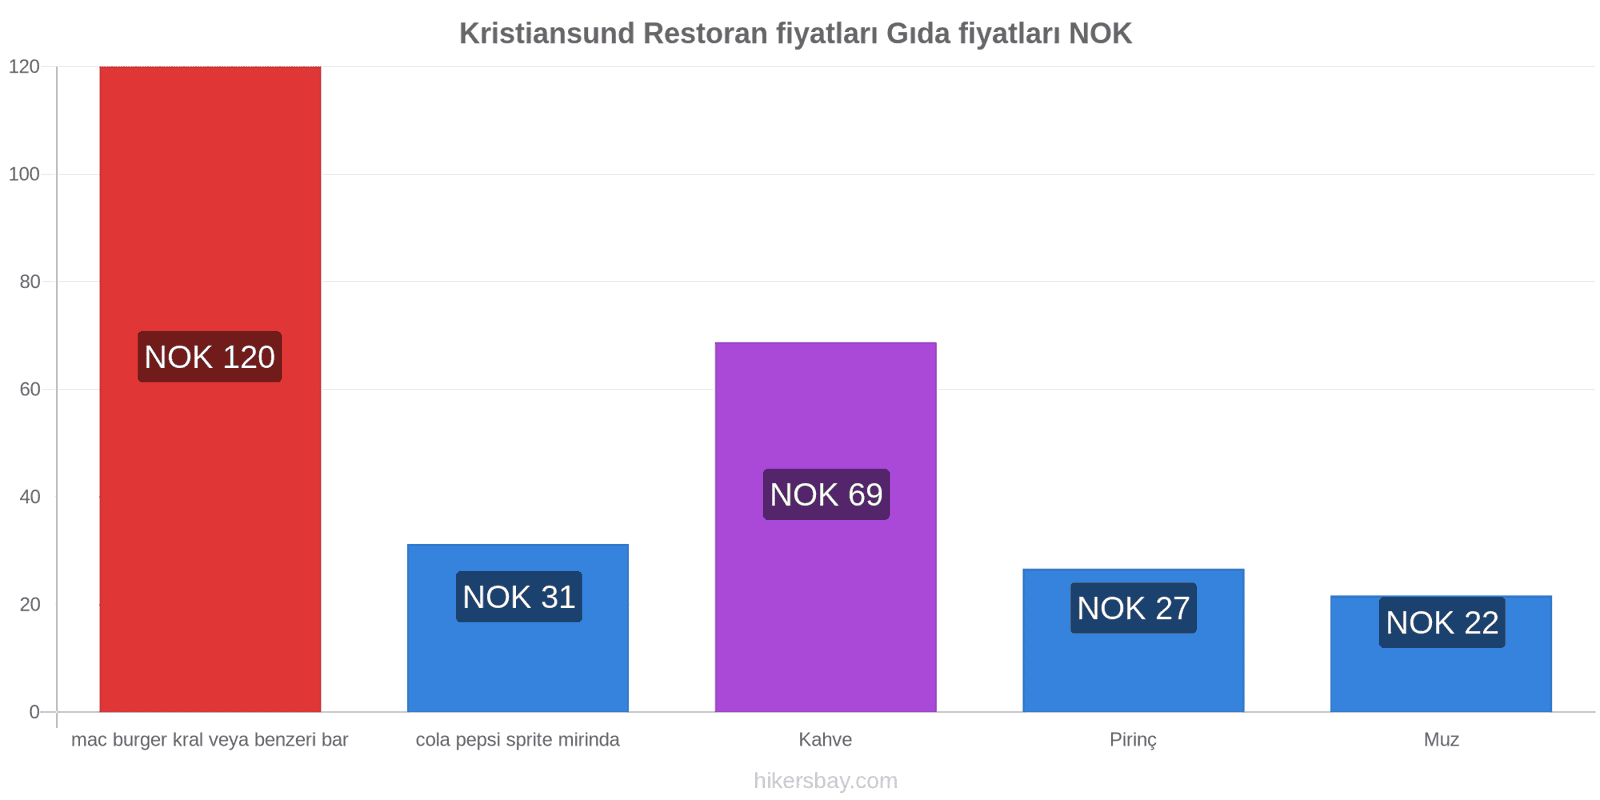 Kristiansund fiyat değişiklikleri hikersbay.com